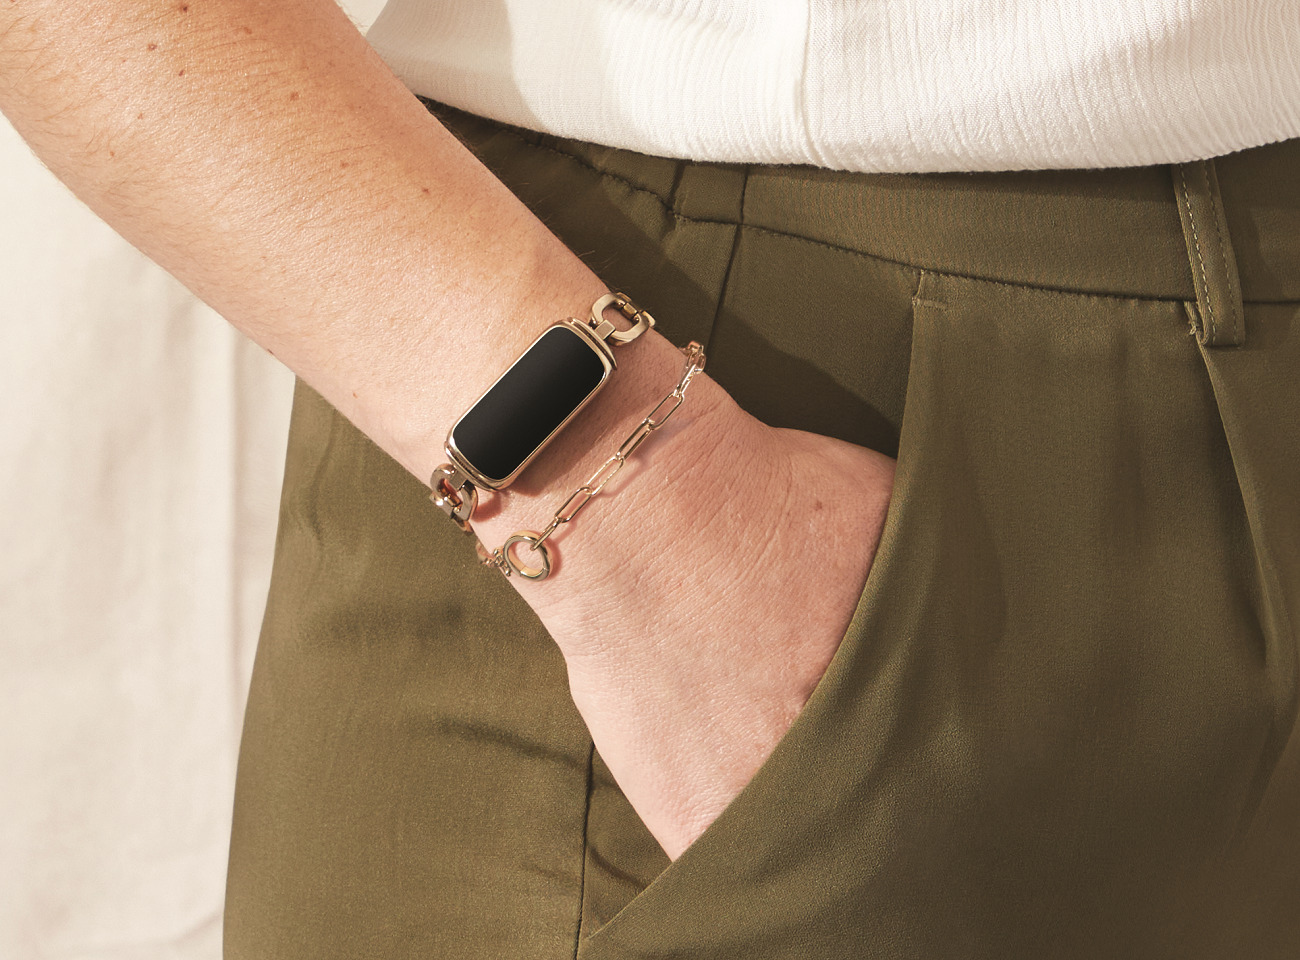 Fitbit luxe avis du bracelet connecté pour le suivi santé et activité